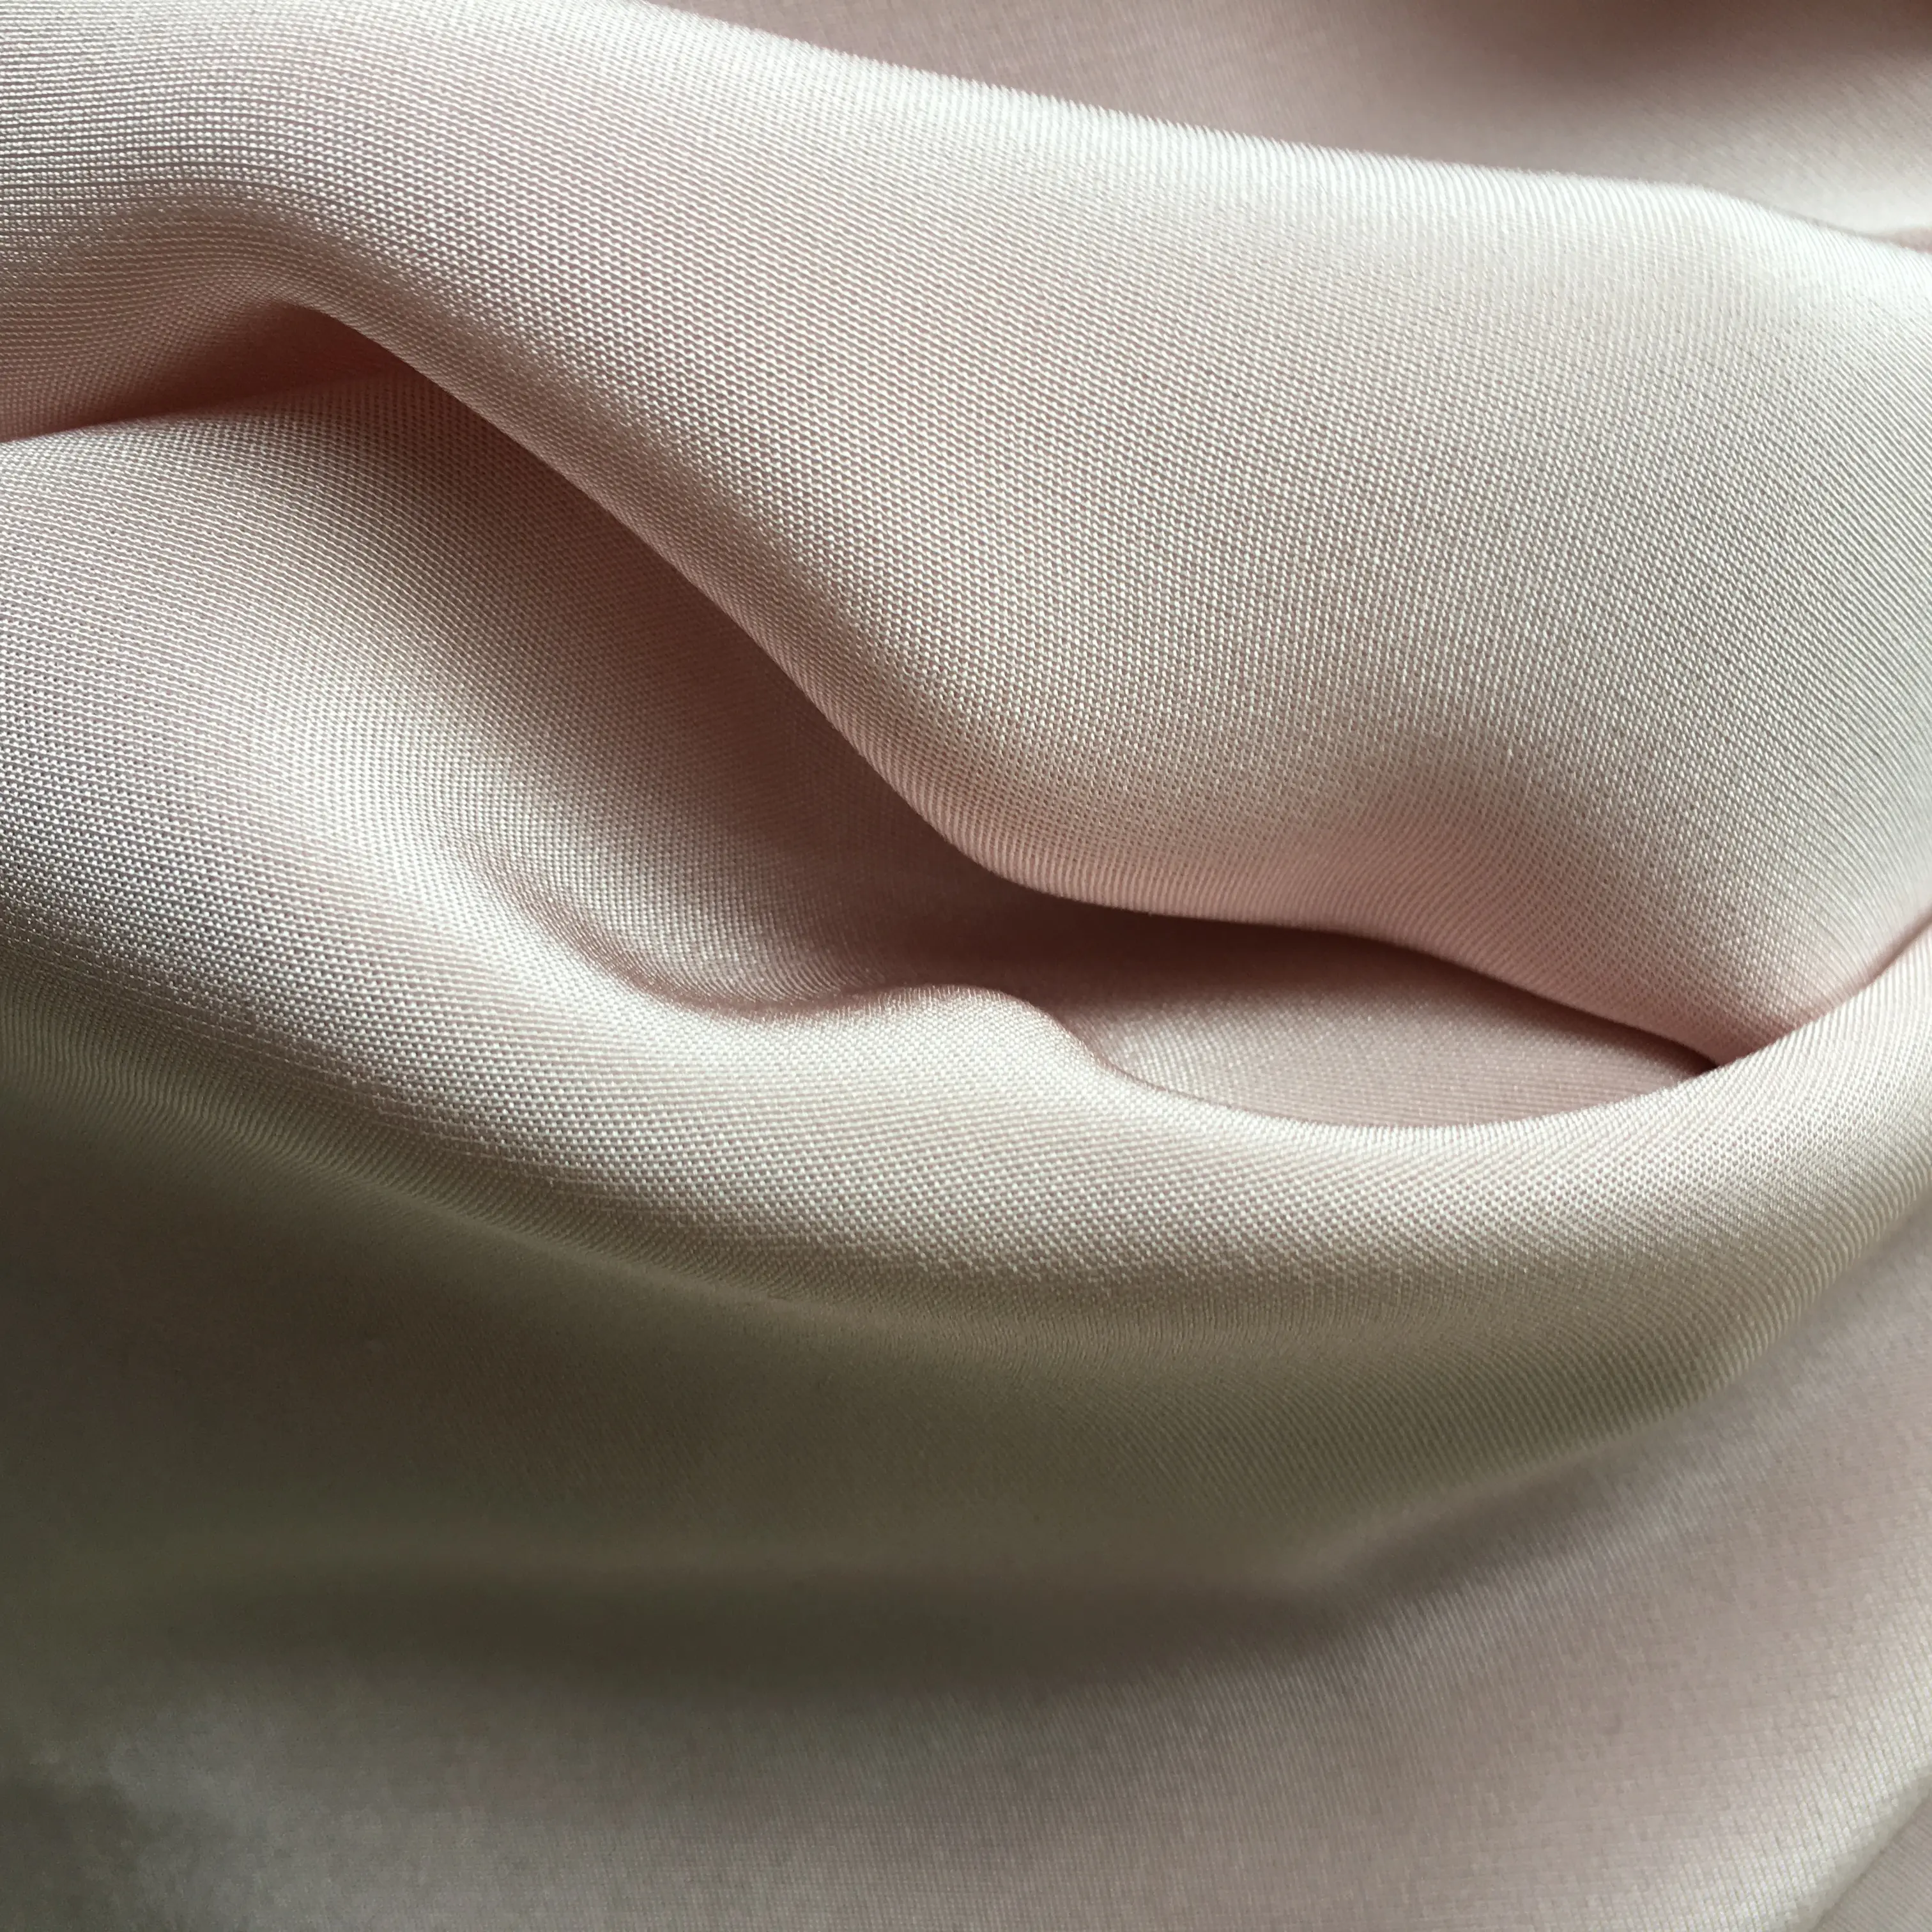 IN STOCK Habotai In stock heavy crepe de chine cdc 30mm silk fabric 100%pure hot sale